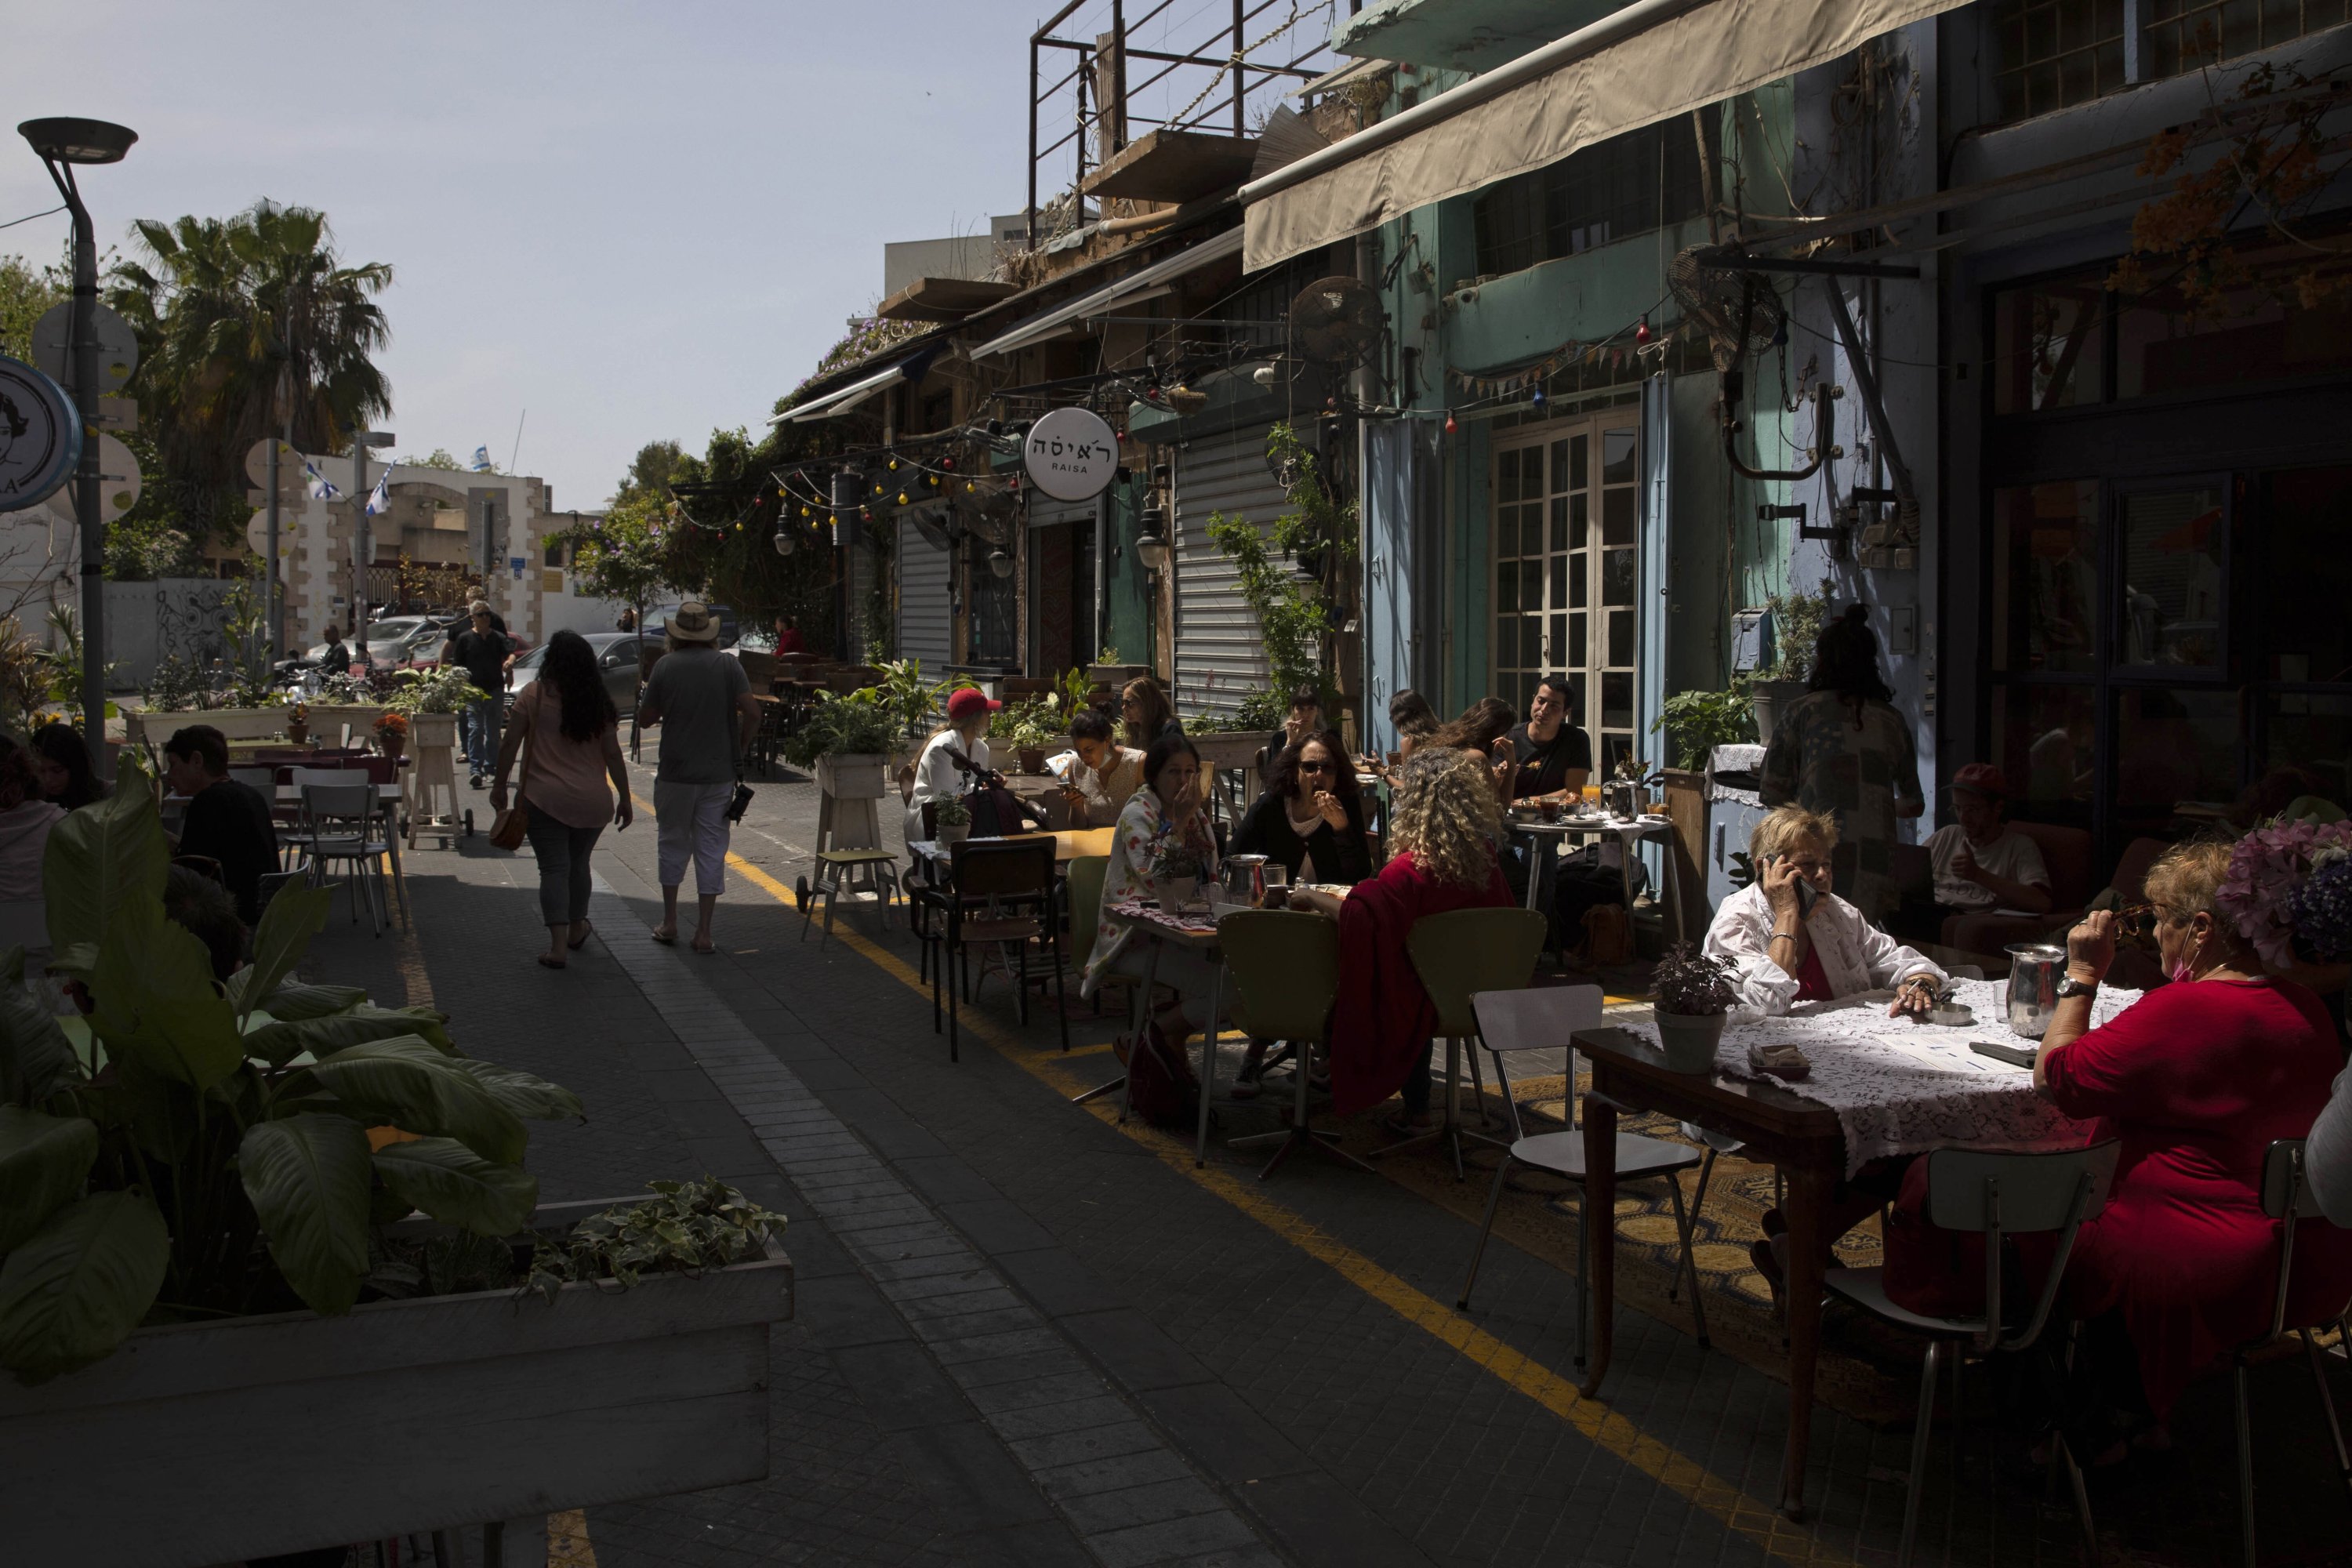 People sit in a restaurant in the Jaffa neighborhood of Tel Aviv, Israel, April 21, 2021. (Sebastian Scheiner via AP)